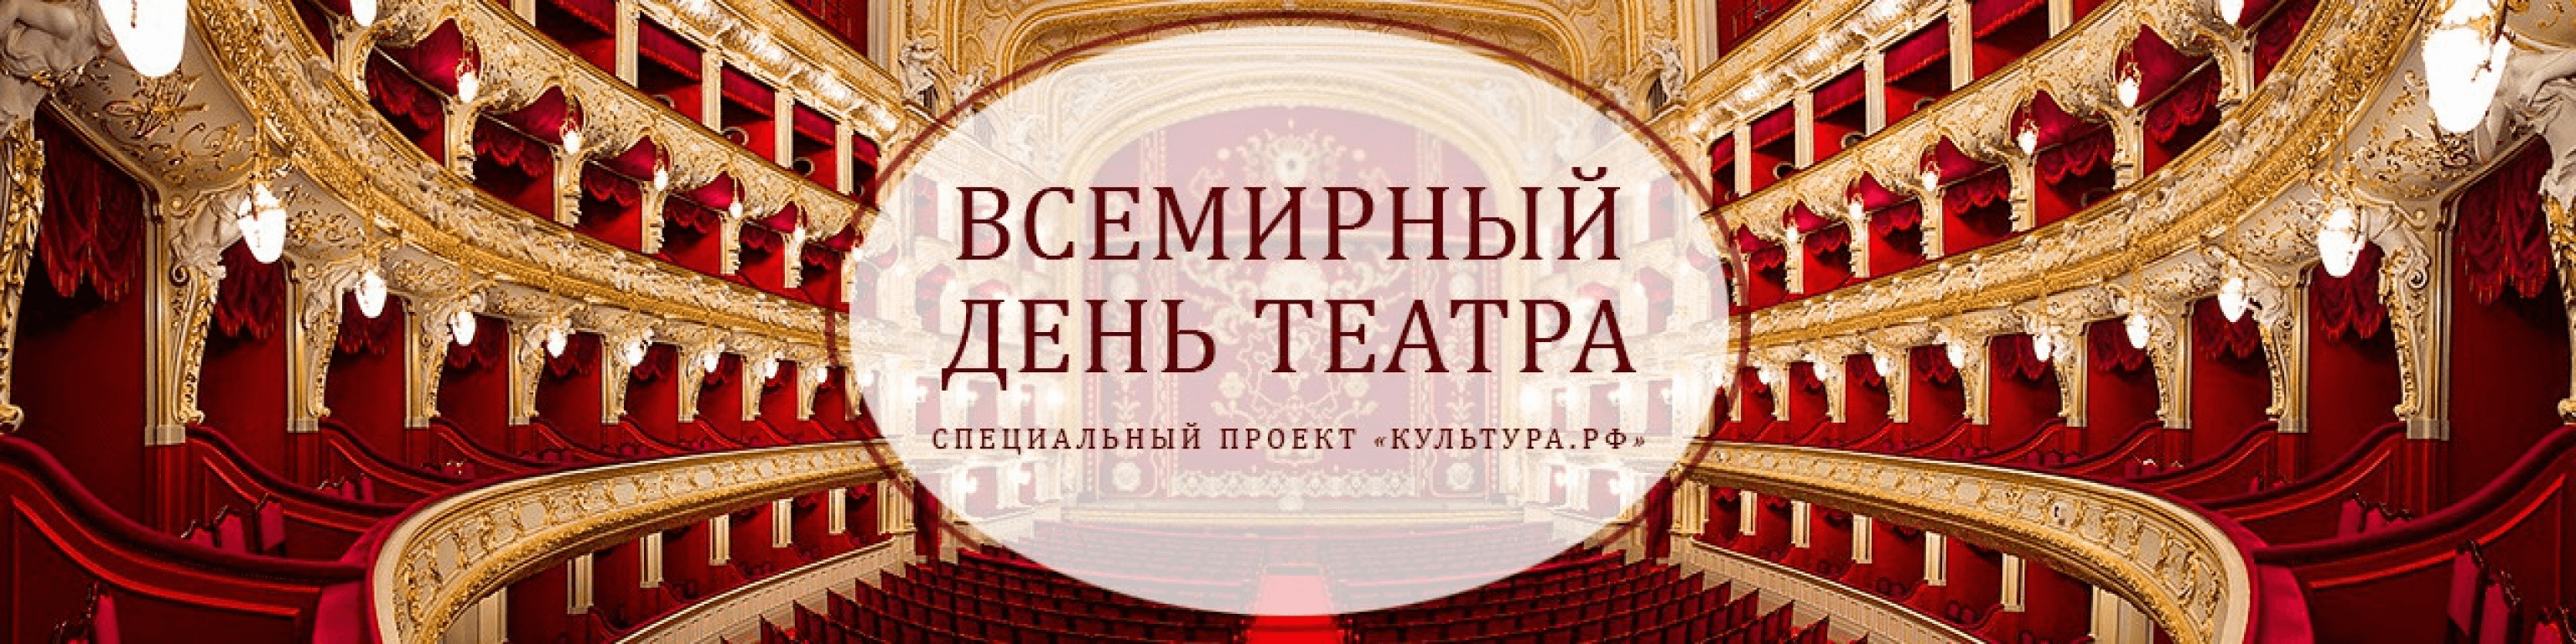 Эмблема Всемирного дня театра